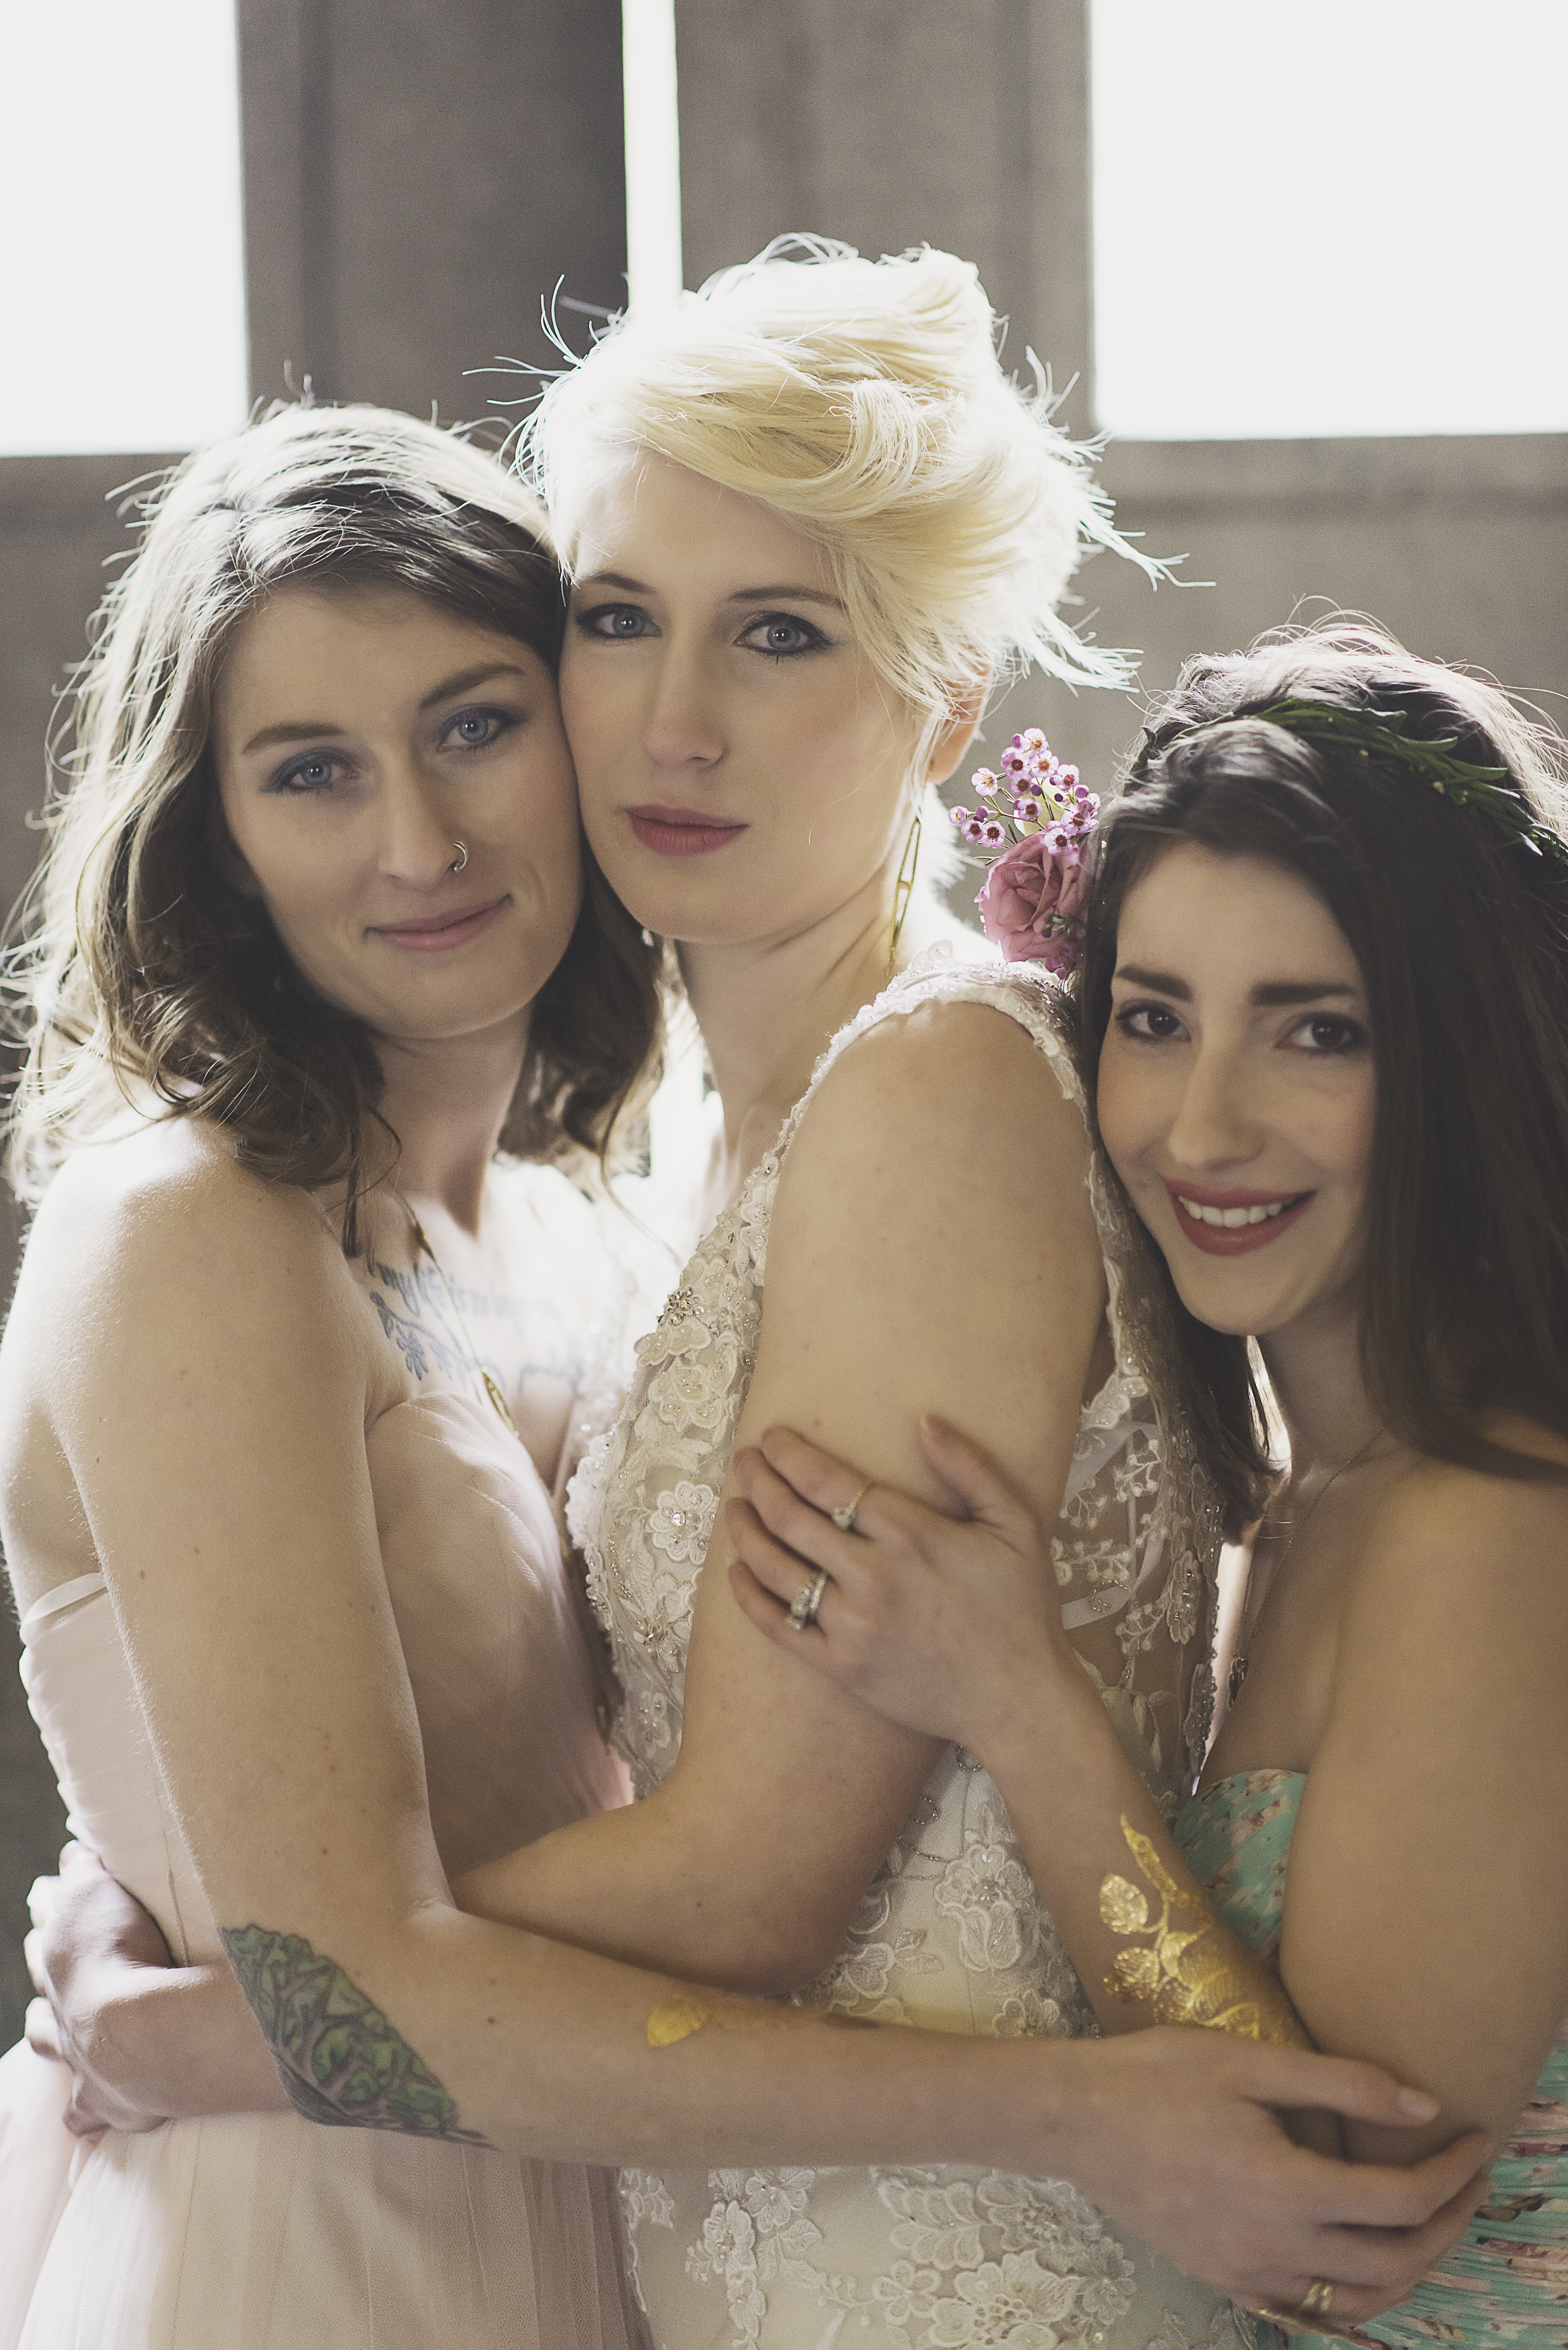 Long Island edgy bridesmaids and bride